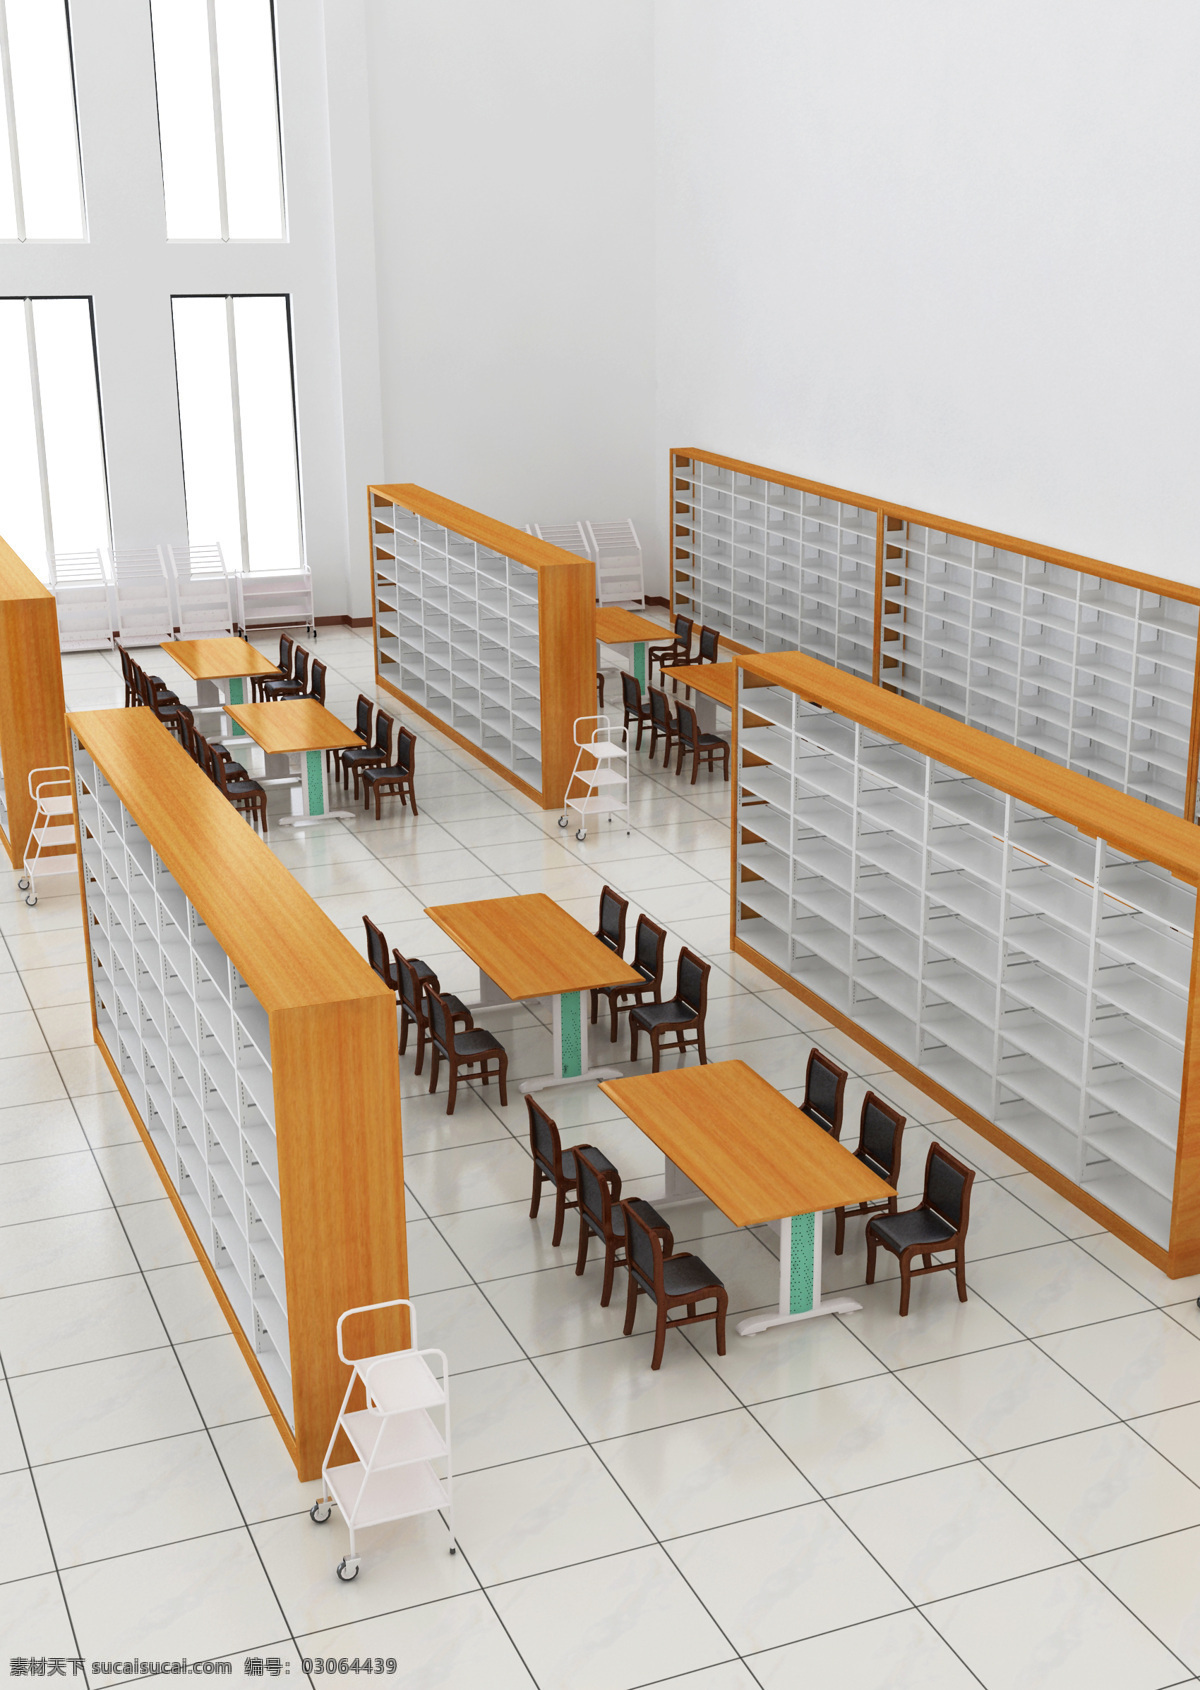 图书馆 3d设计 3d作品 办公室 书架 图书室 图书室效果图 图书馆一角 场景效果 家居装饰素材 室内设计